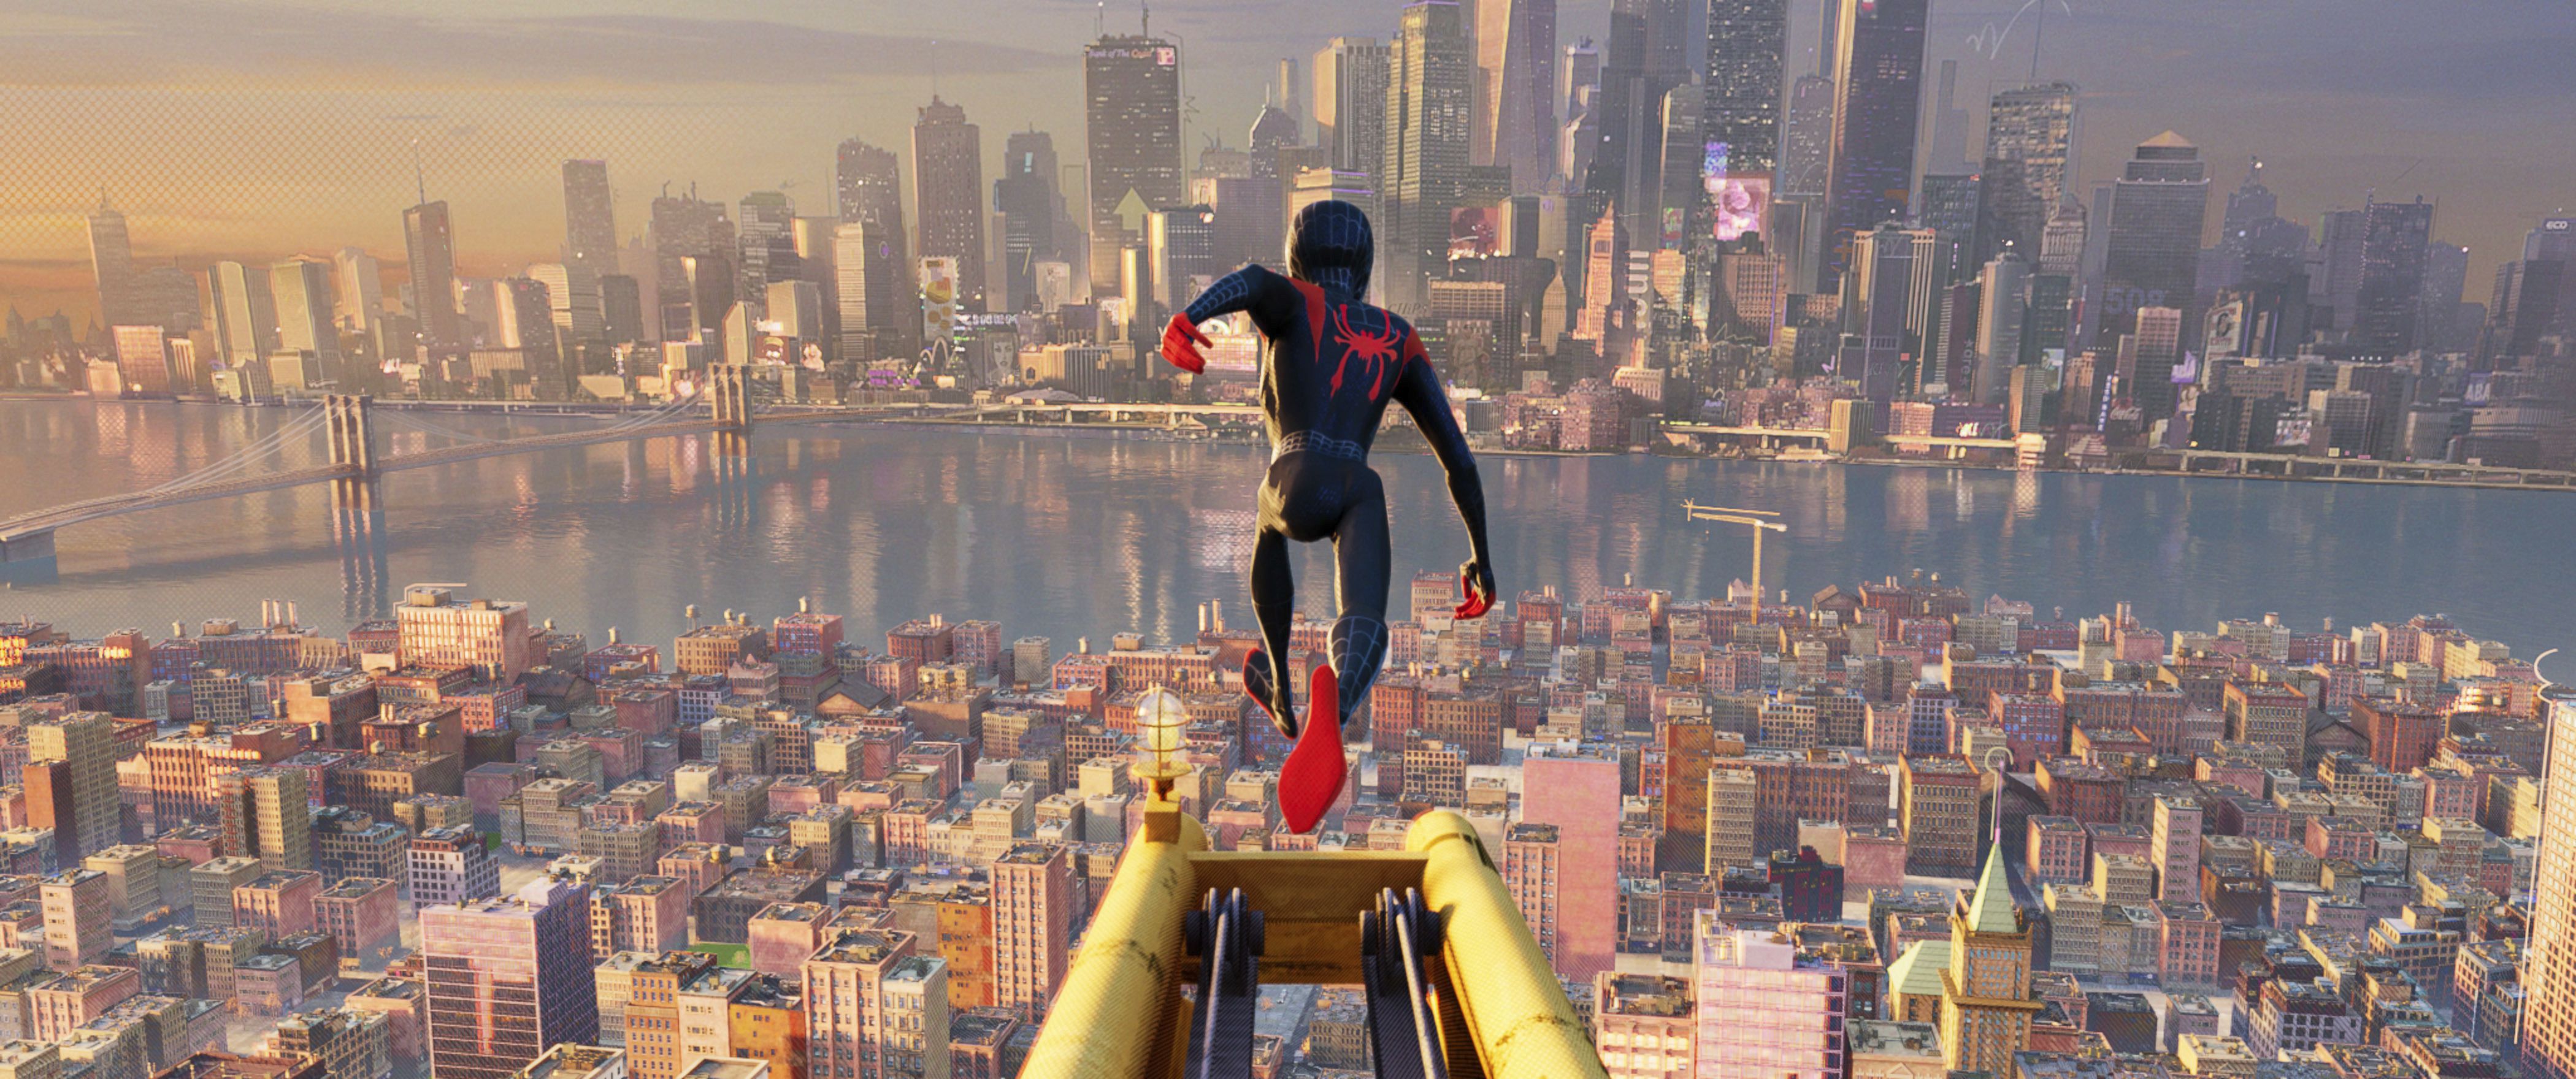 Spider-Man: Into The Spiderverse, se llevó el Oscar a mejor película animada, y es probable que su secuela haga lo propio
(Sony Pictures Animation vía AP)